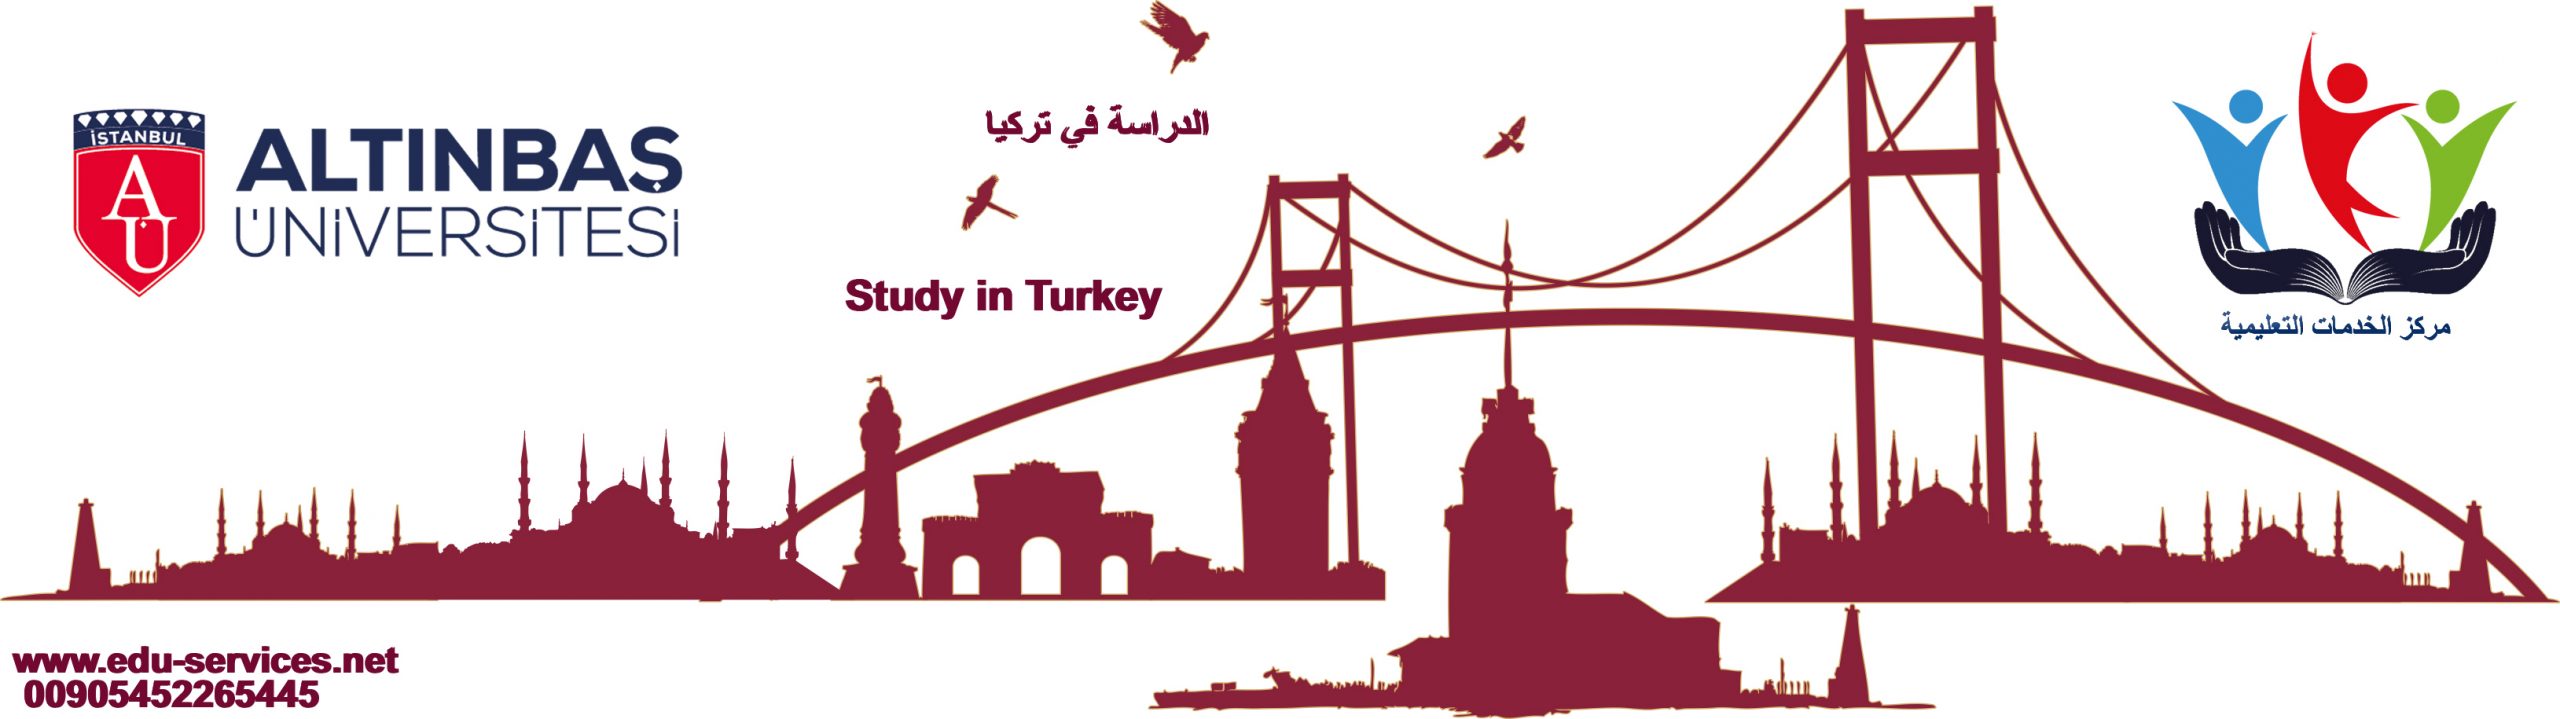 الدراسة في تركيا-جامعة اسطنبول ألتن باش